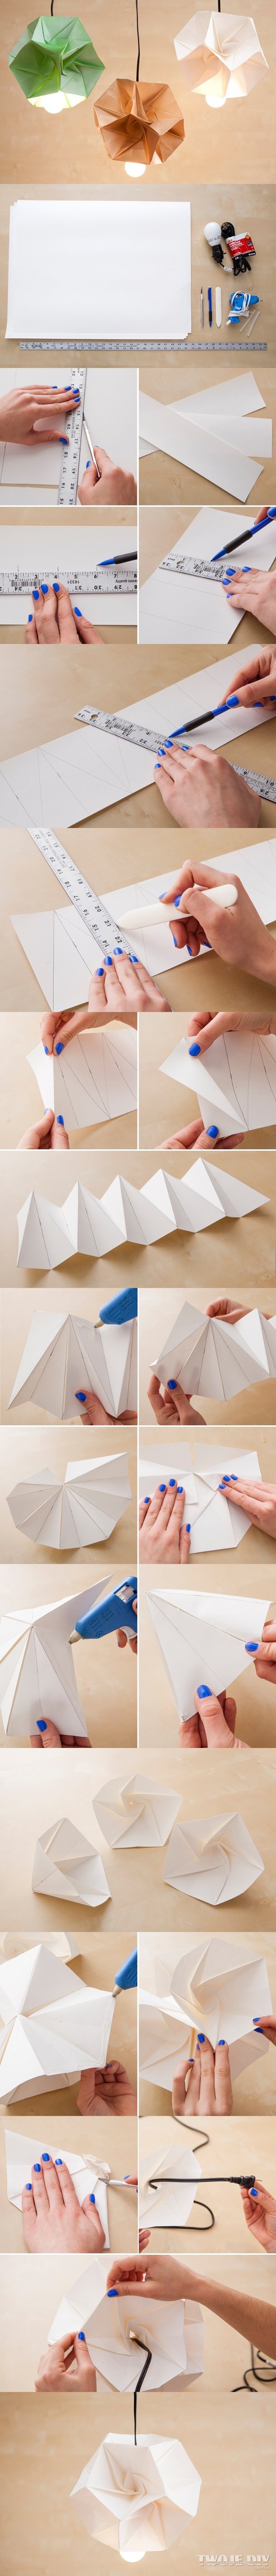 Pomysłowe lampy origami